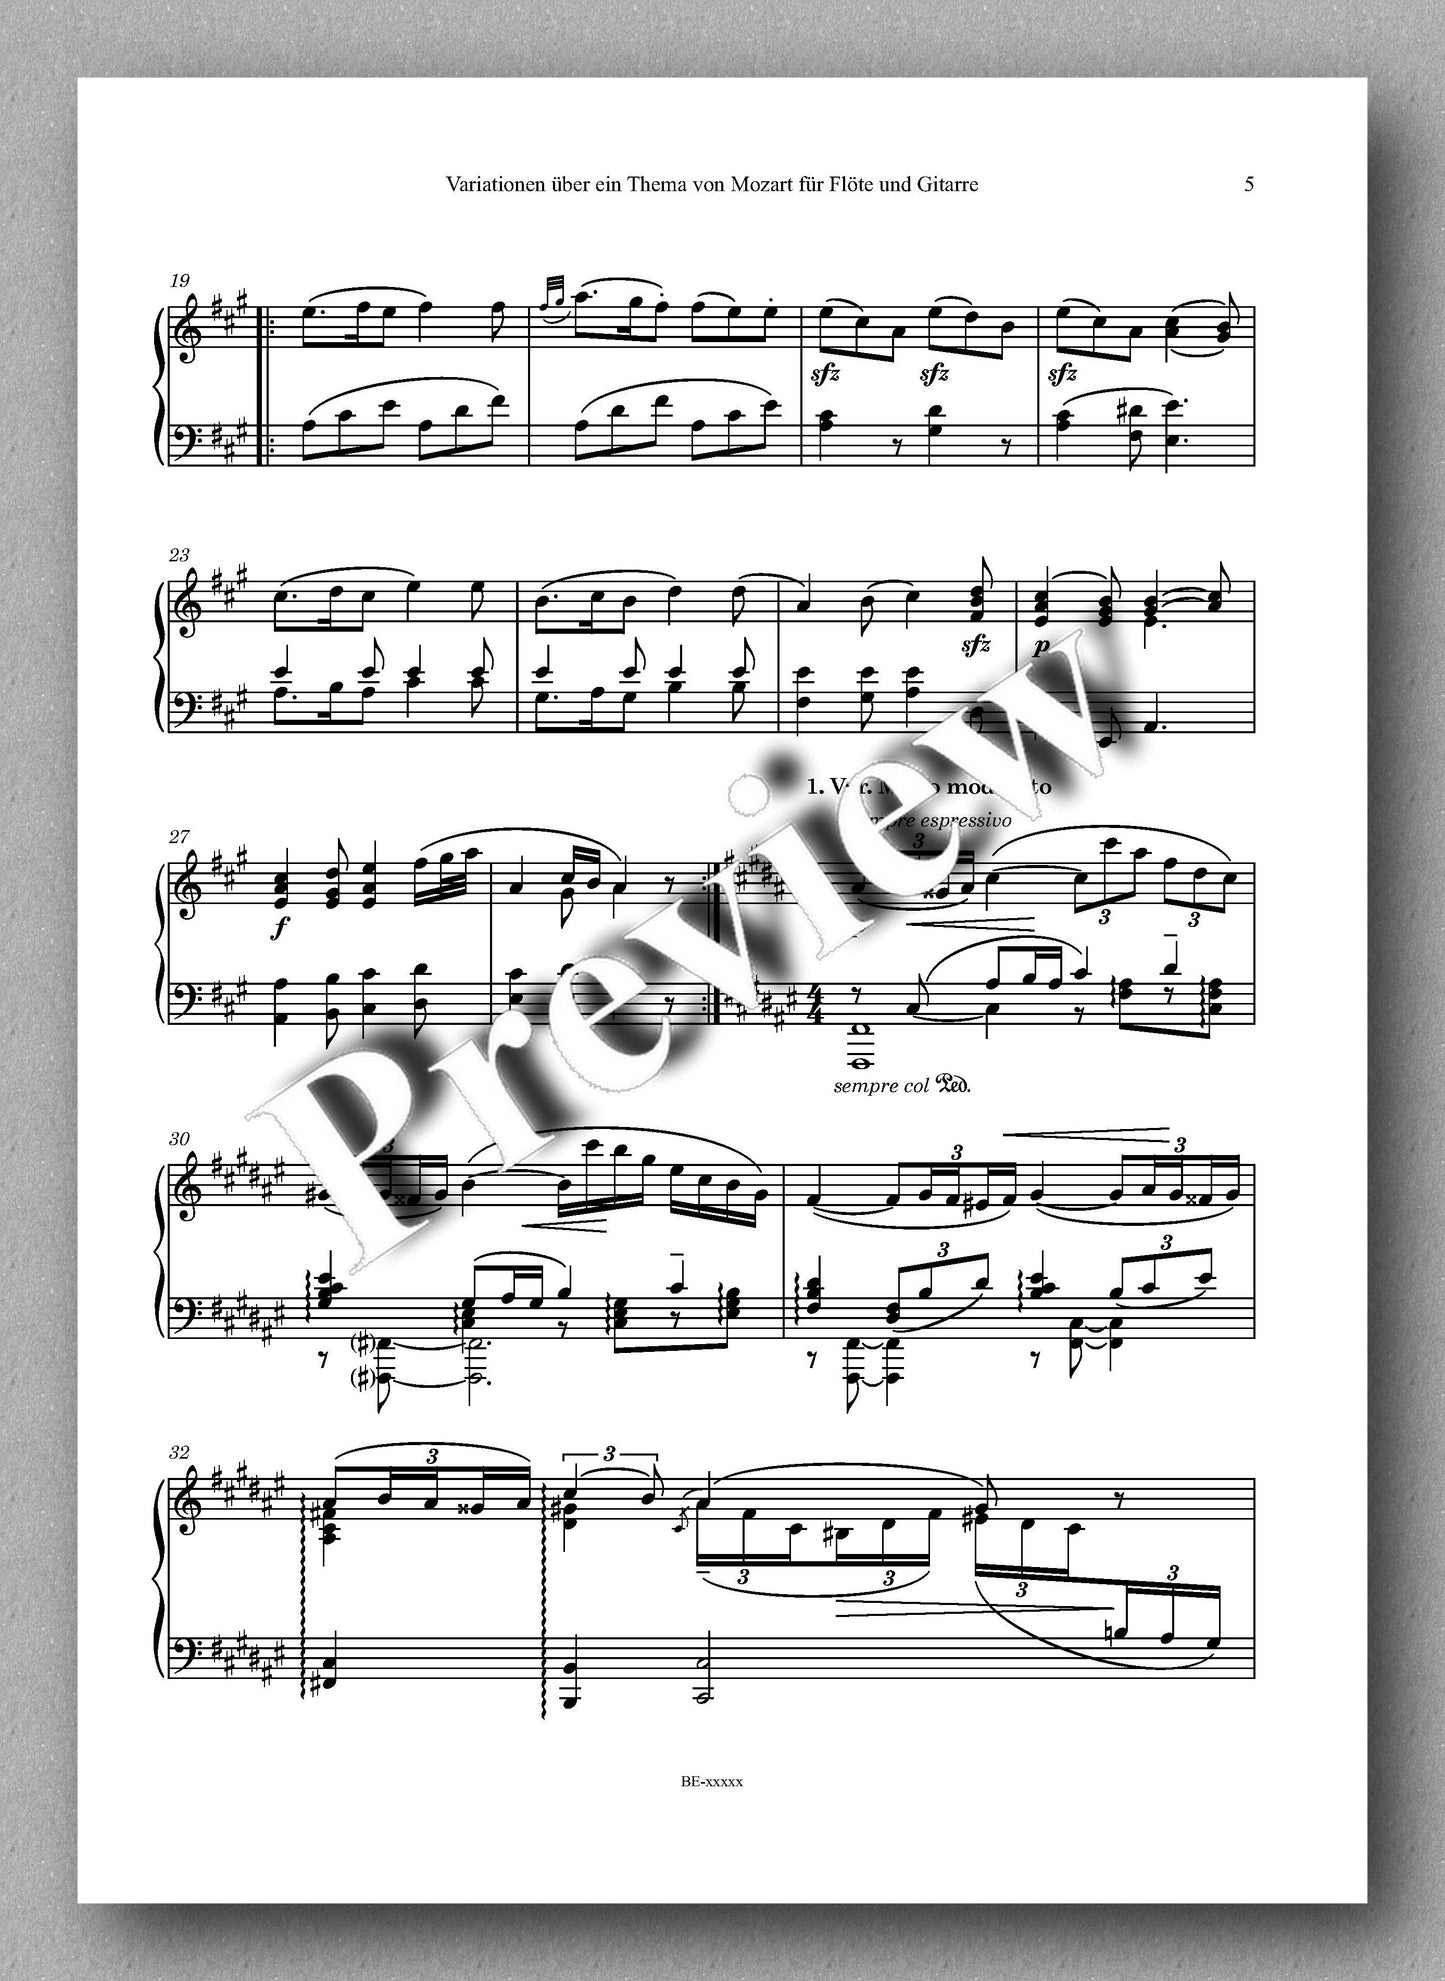 Rebay, Klavier No. 14, Variationen über ein Thema von Mozart für Flöte und Gitarre - music score 2